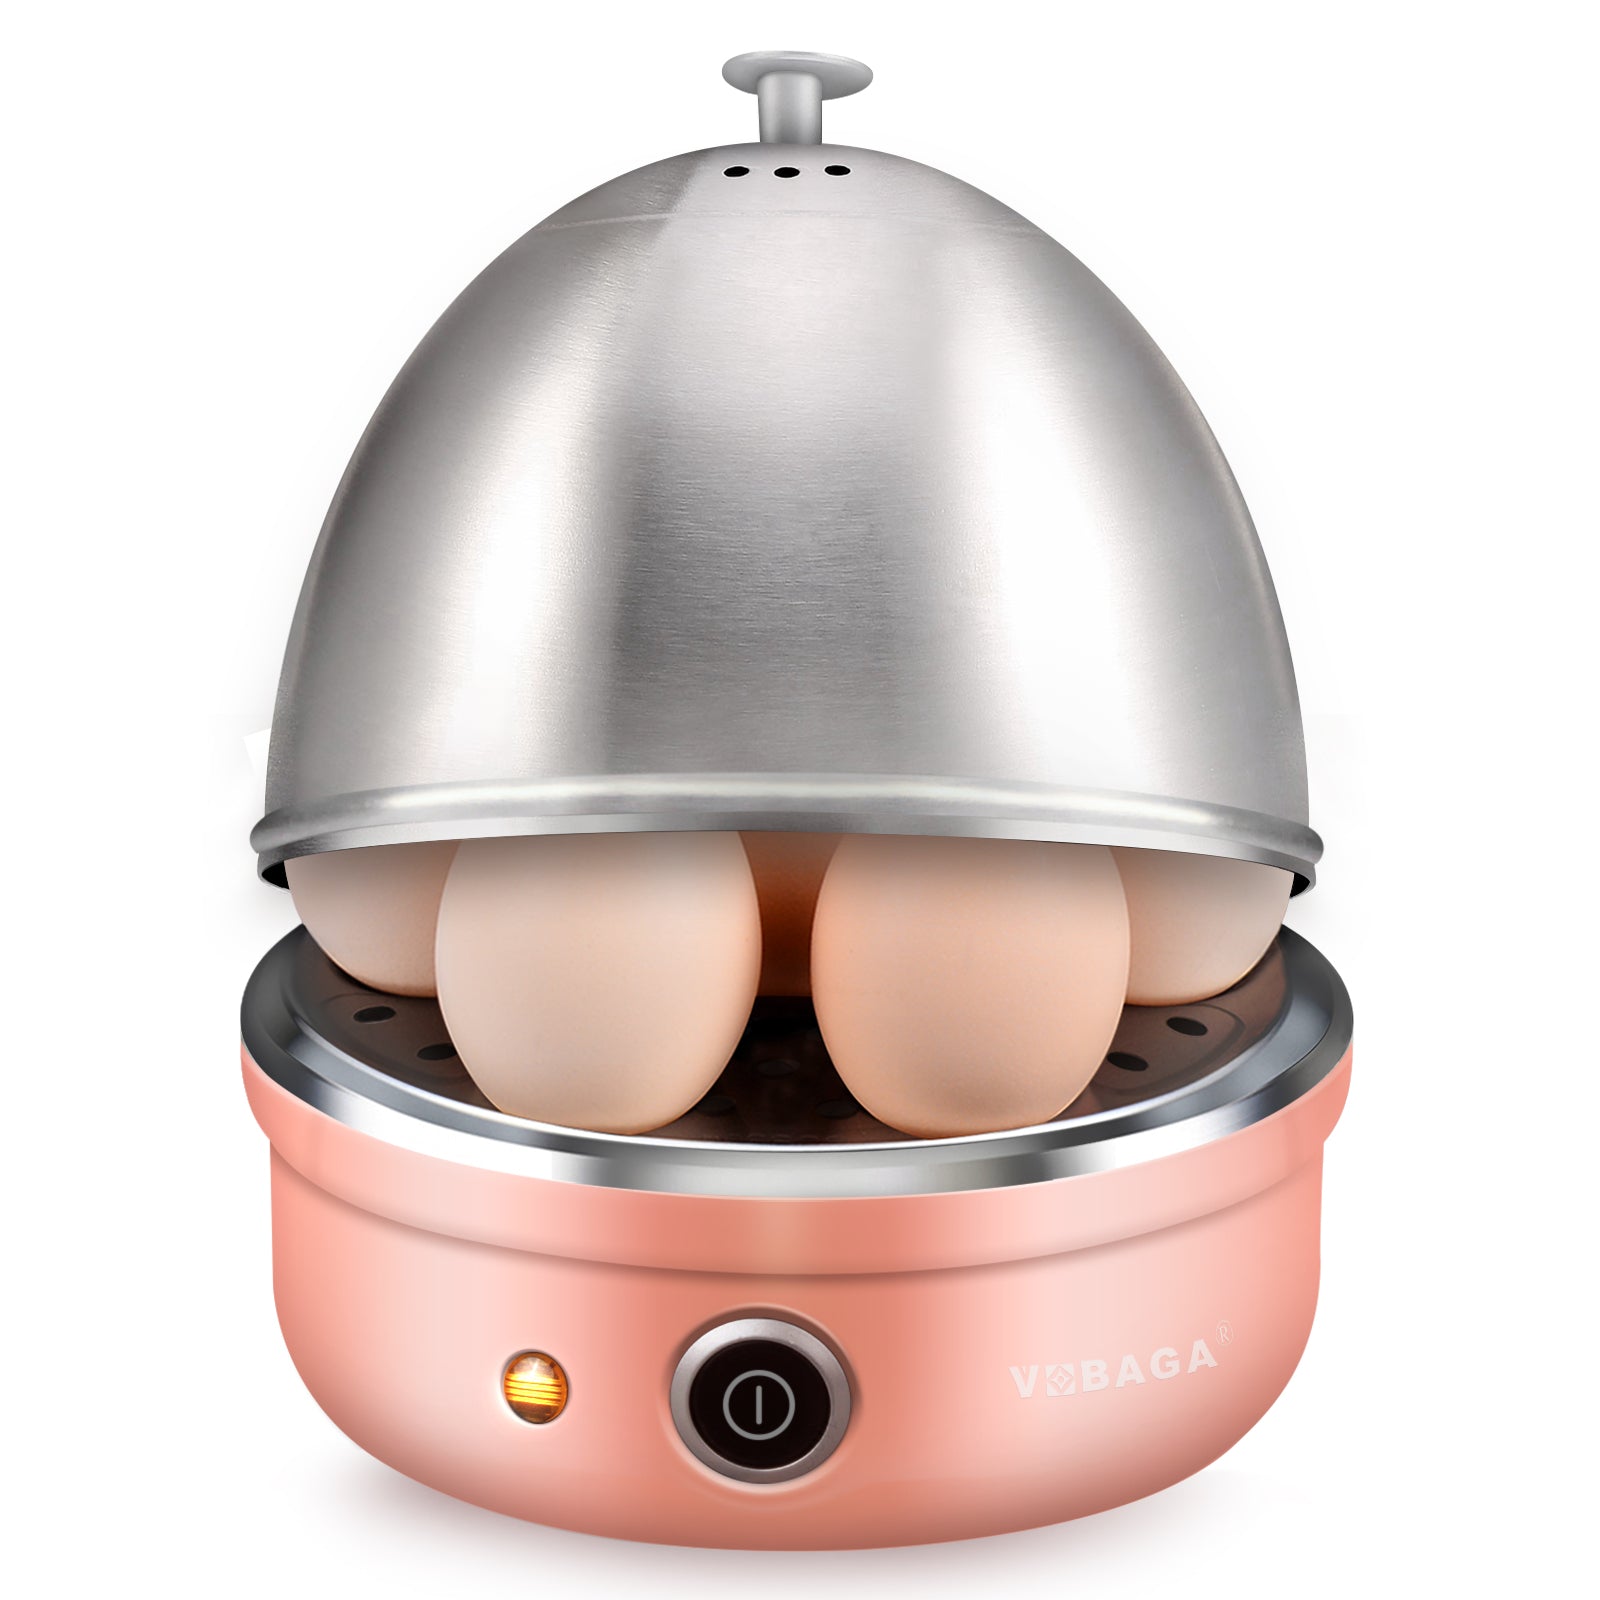 Pink Electric Egg Cooker 7 Egg Capacity Boiler Maker Eggs Steamed with Egg Piercer